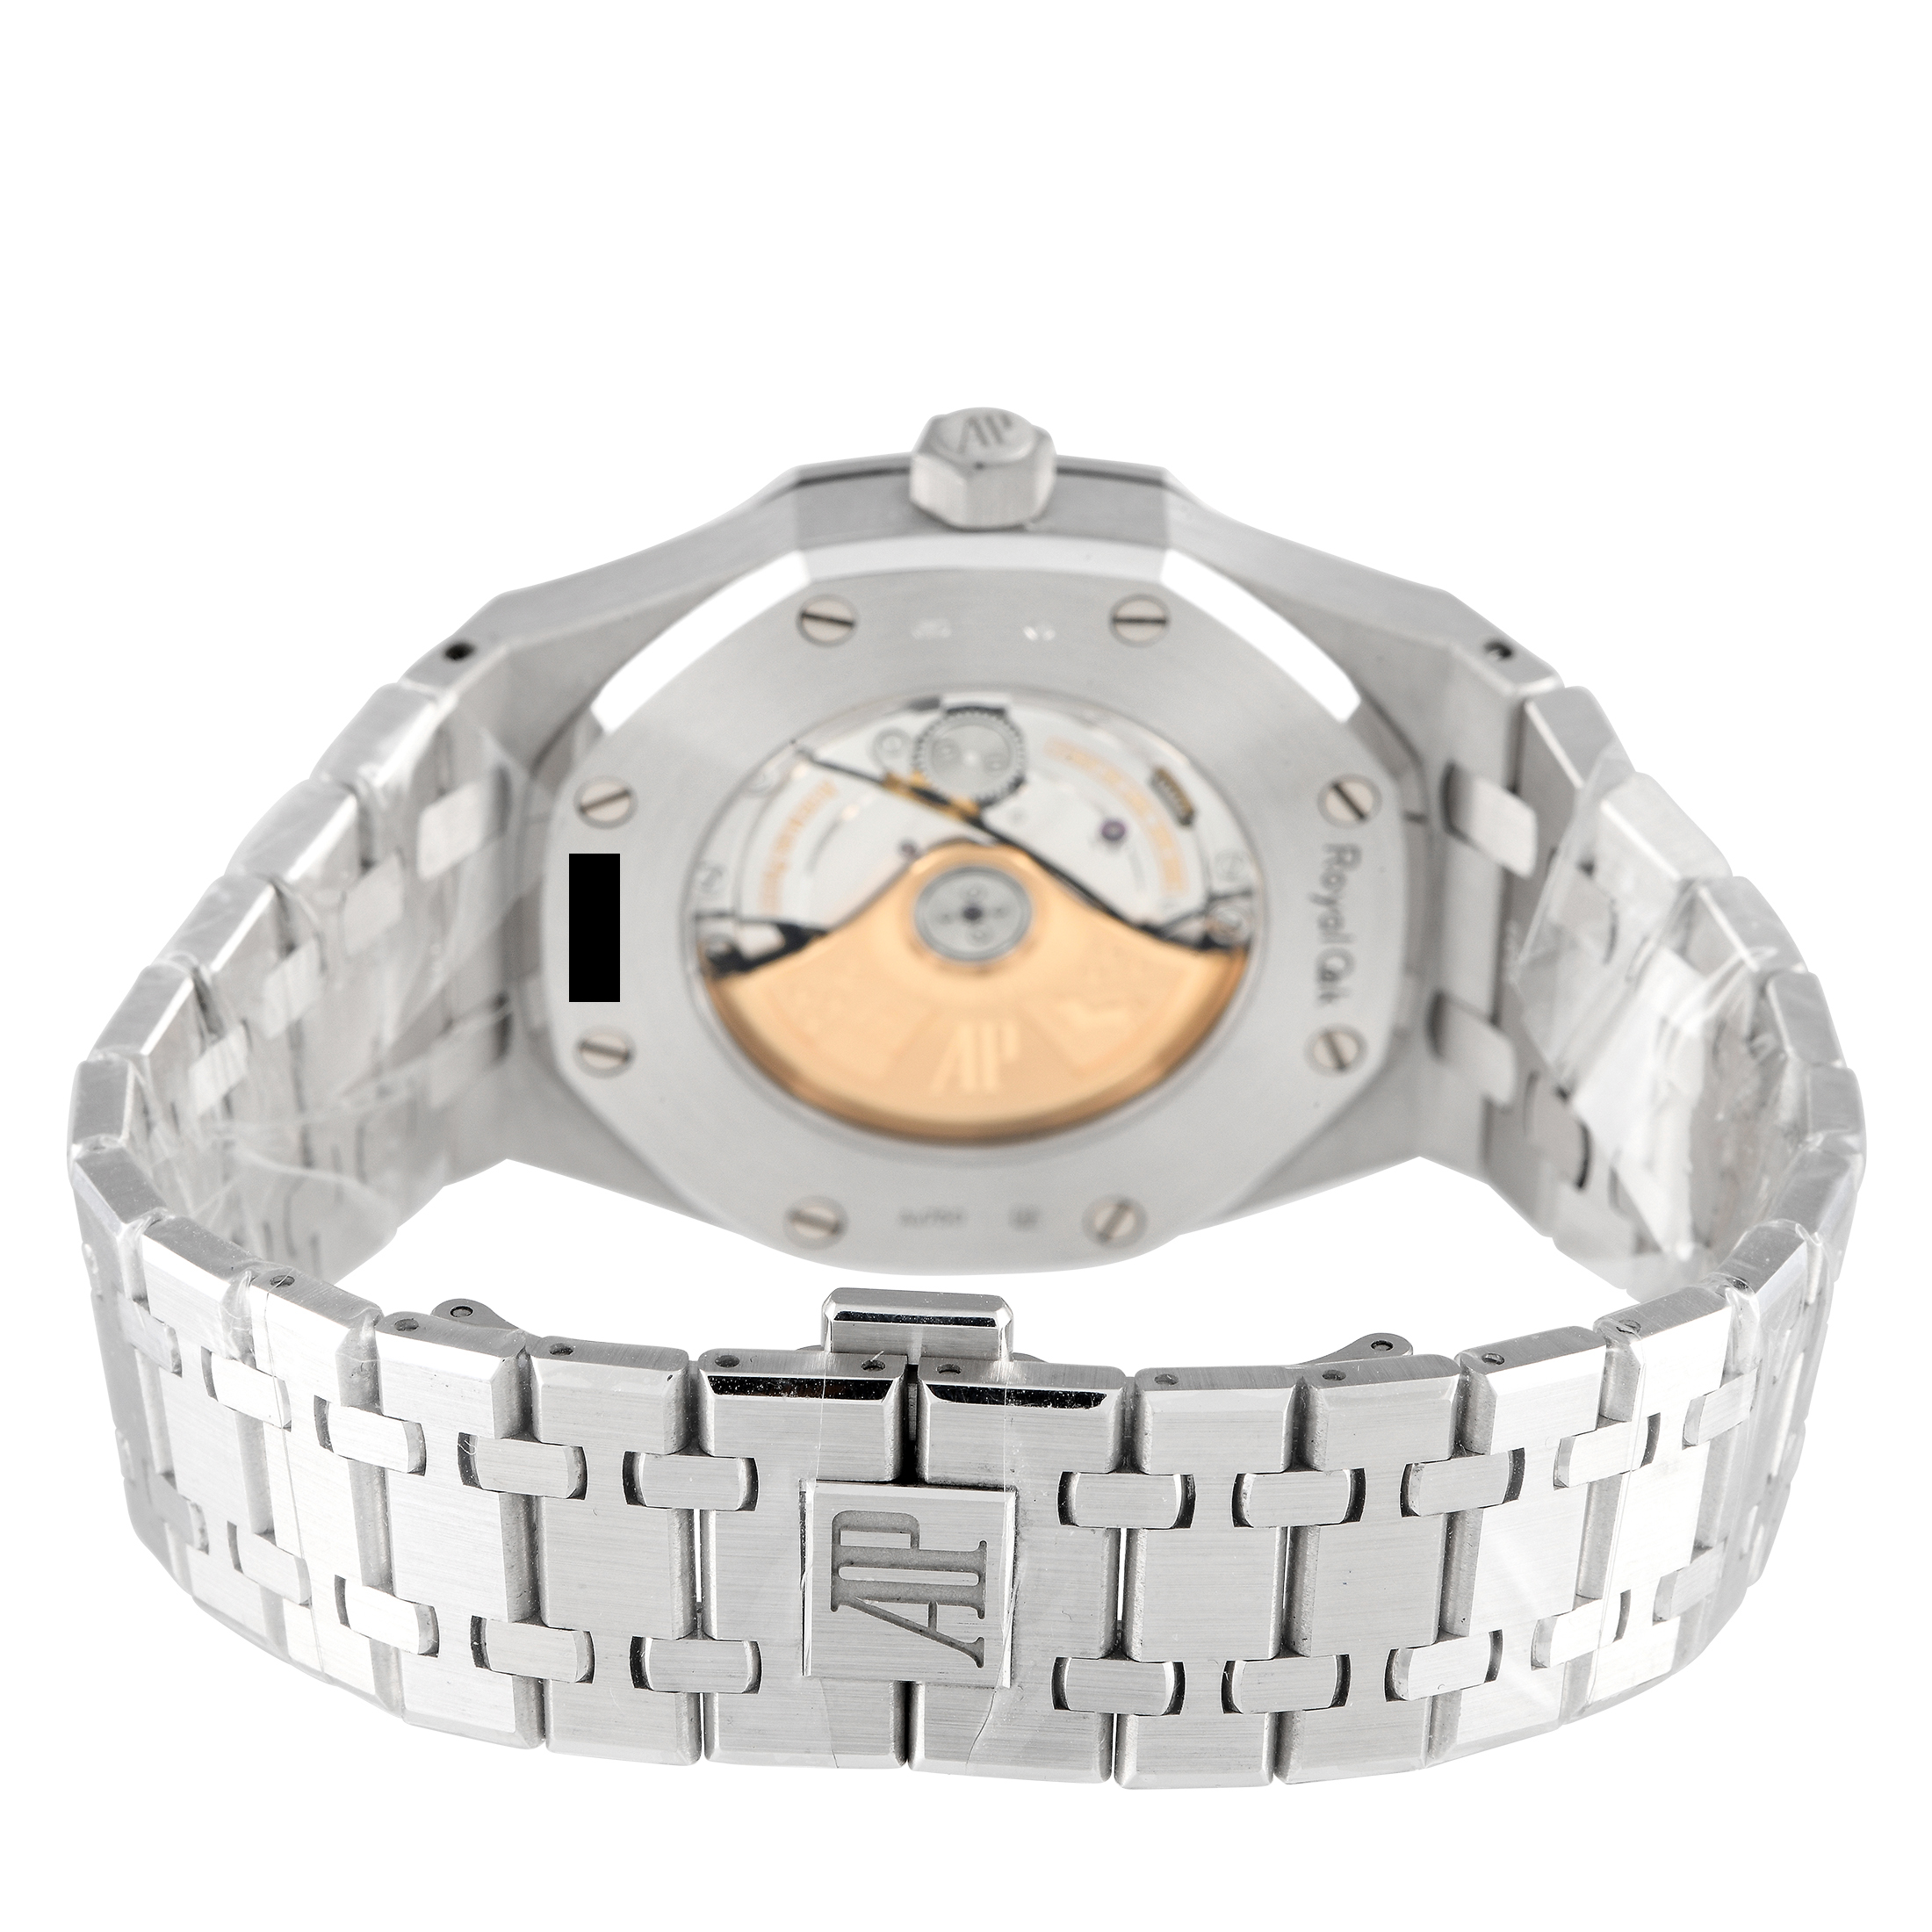 Audemars Piguet Royal Oak Rainbow Bezel Diamond Dial Watch 15413BC.YY.1220BC.01